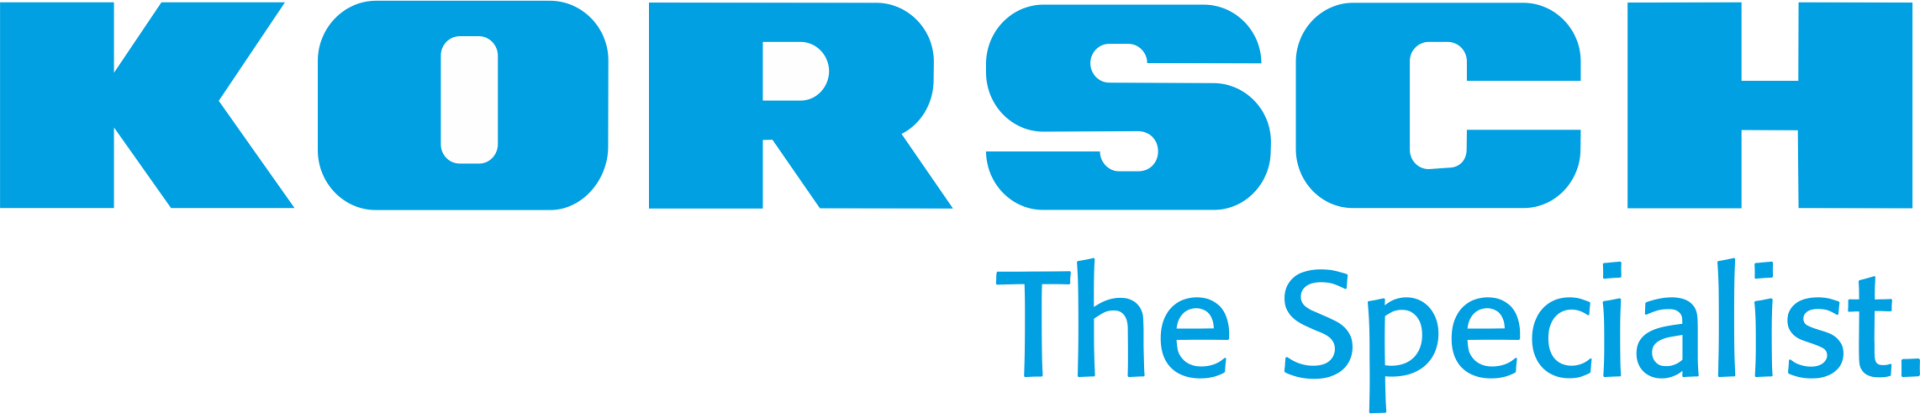 Korsch_Logo